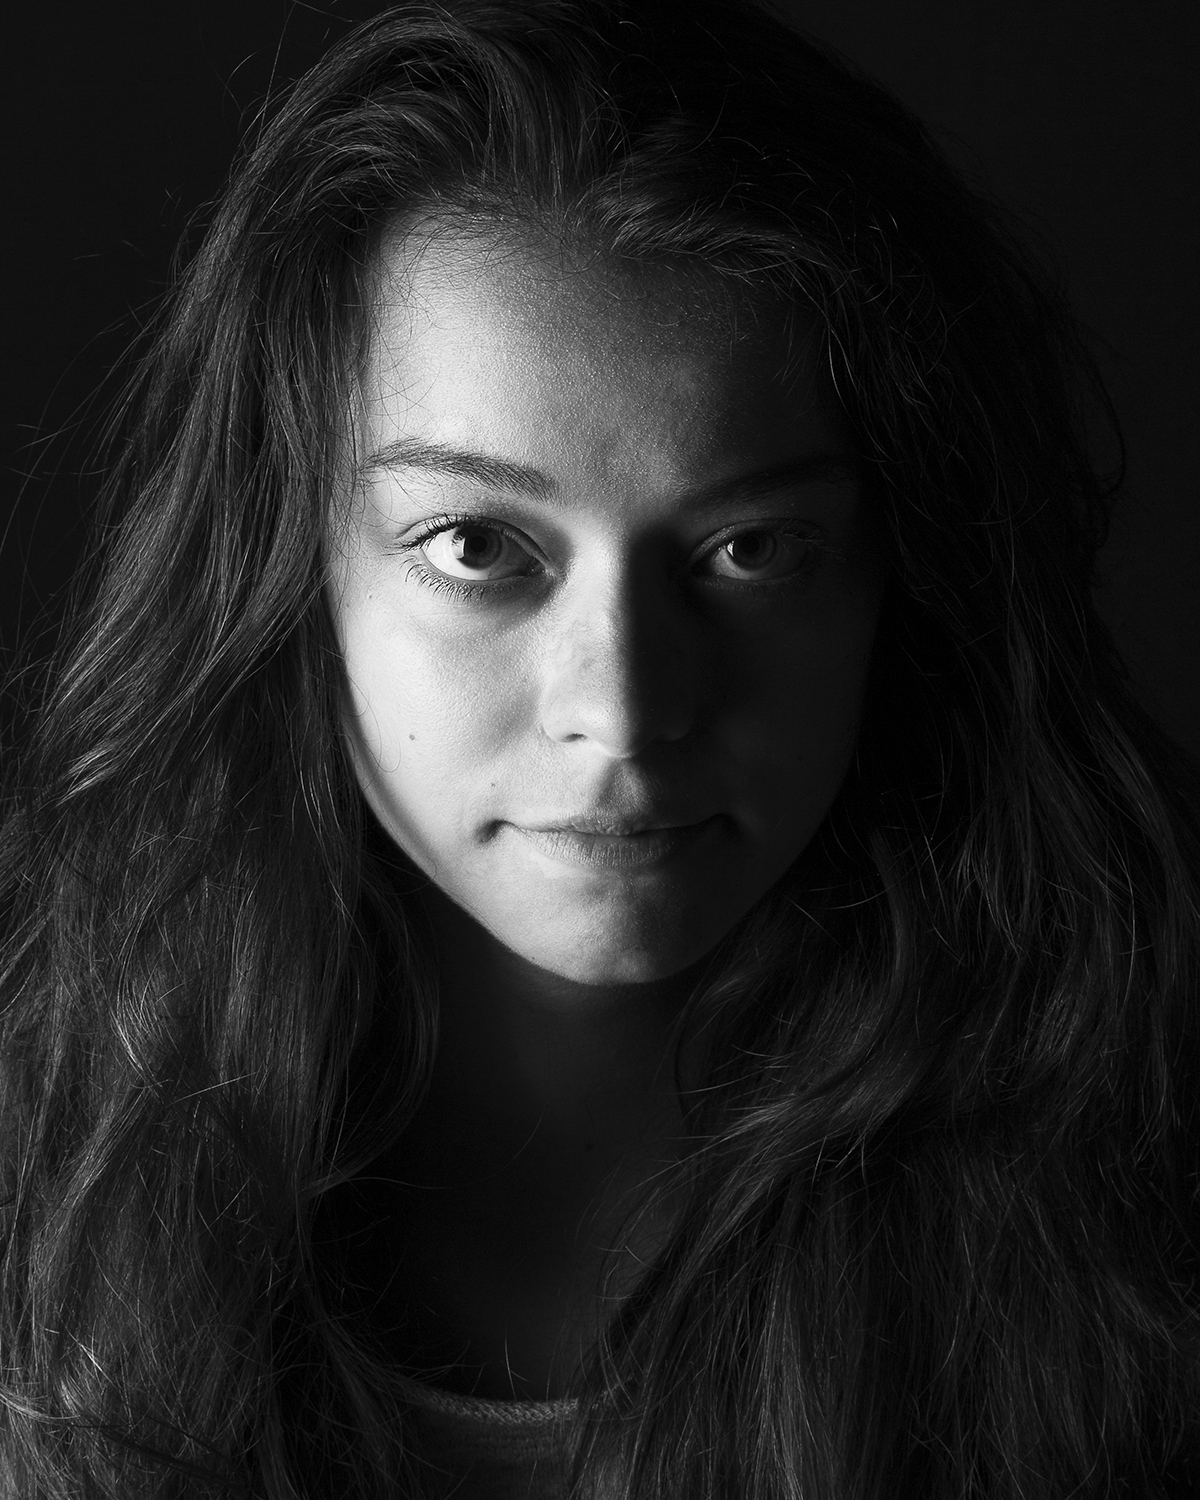 Photographie en niveau de gris de Cléa Schneider éclairée avec un clair-obscur fait en lumière artificielle